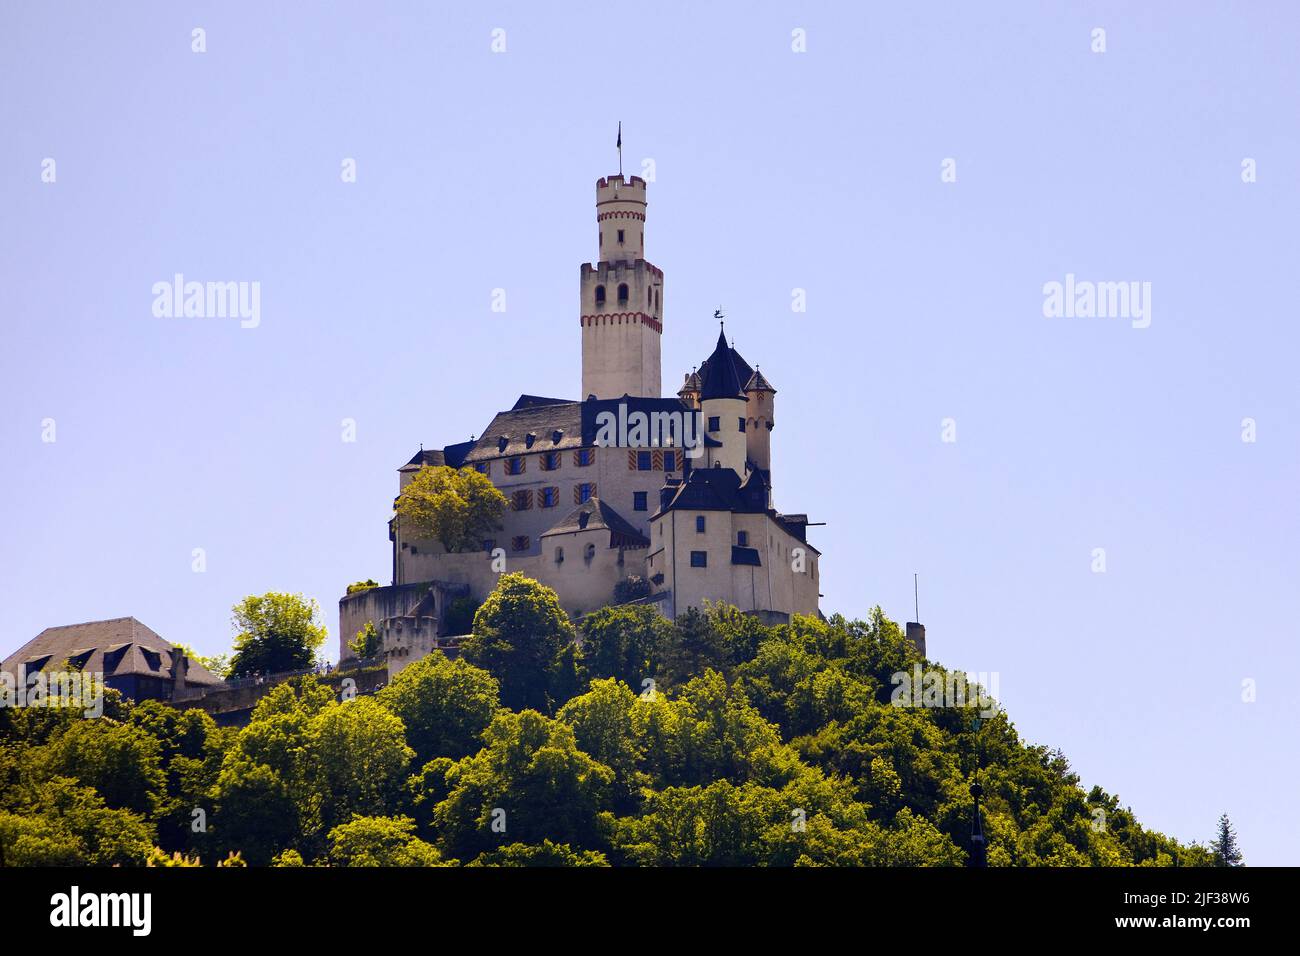 Le château de Marksburg, le seul château médiéval au sommet d'une colline sur le Rhin moyen qui n'a jamais été détruit, Allemagne, Rhénanie-Palatinat, Braubach Banque D'Images